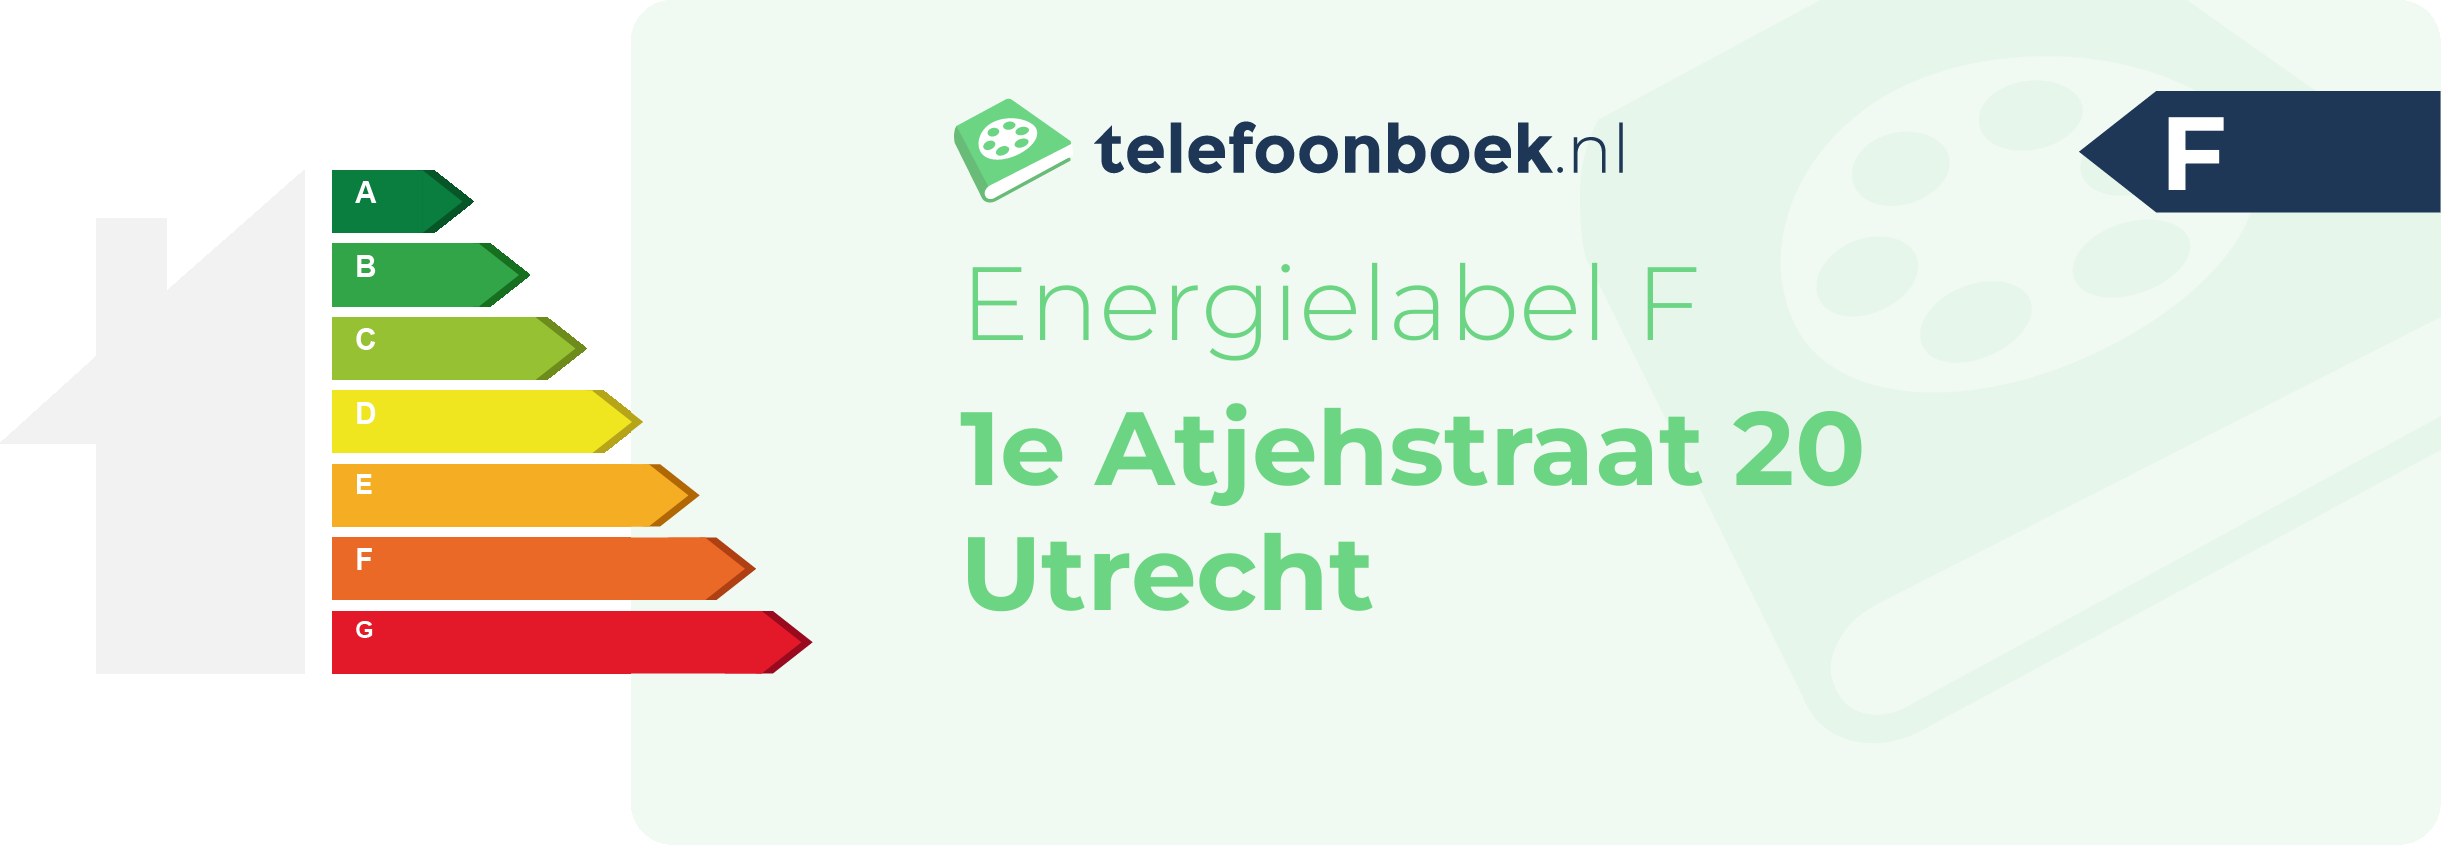 Energielabel 1e Atjehstraat 20 Utrecht